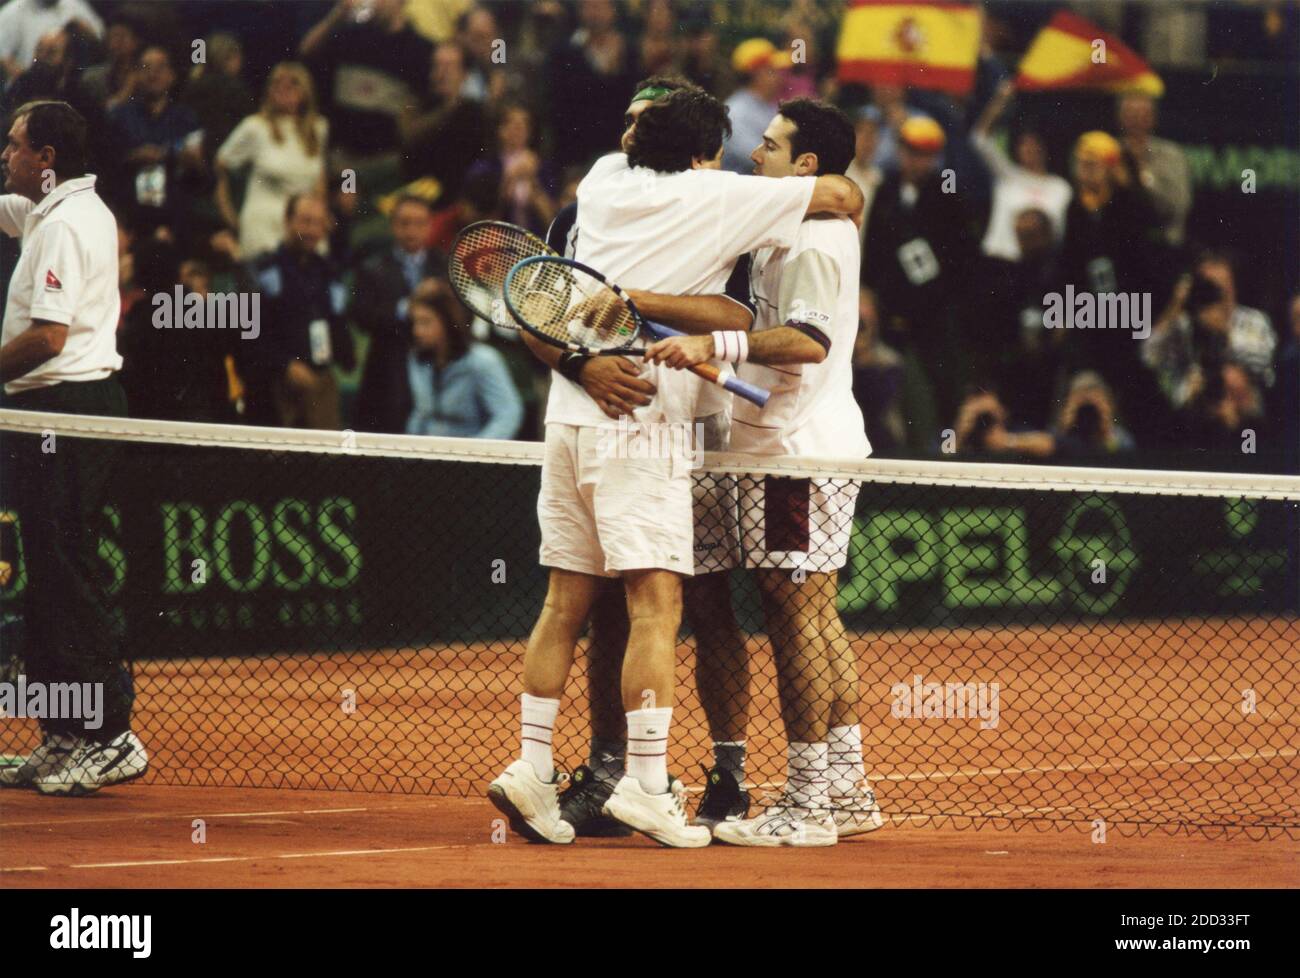 Squadra di tennis spagnola alla Coppa Davis semifinale US vs Spagna, Santander, Spagna 2000 Foto Stock